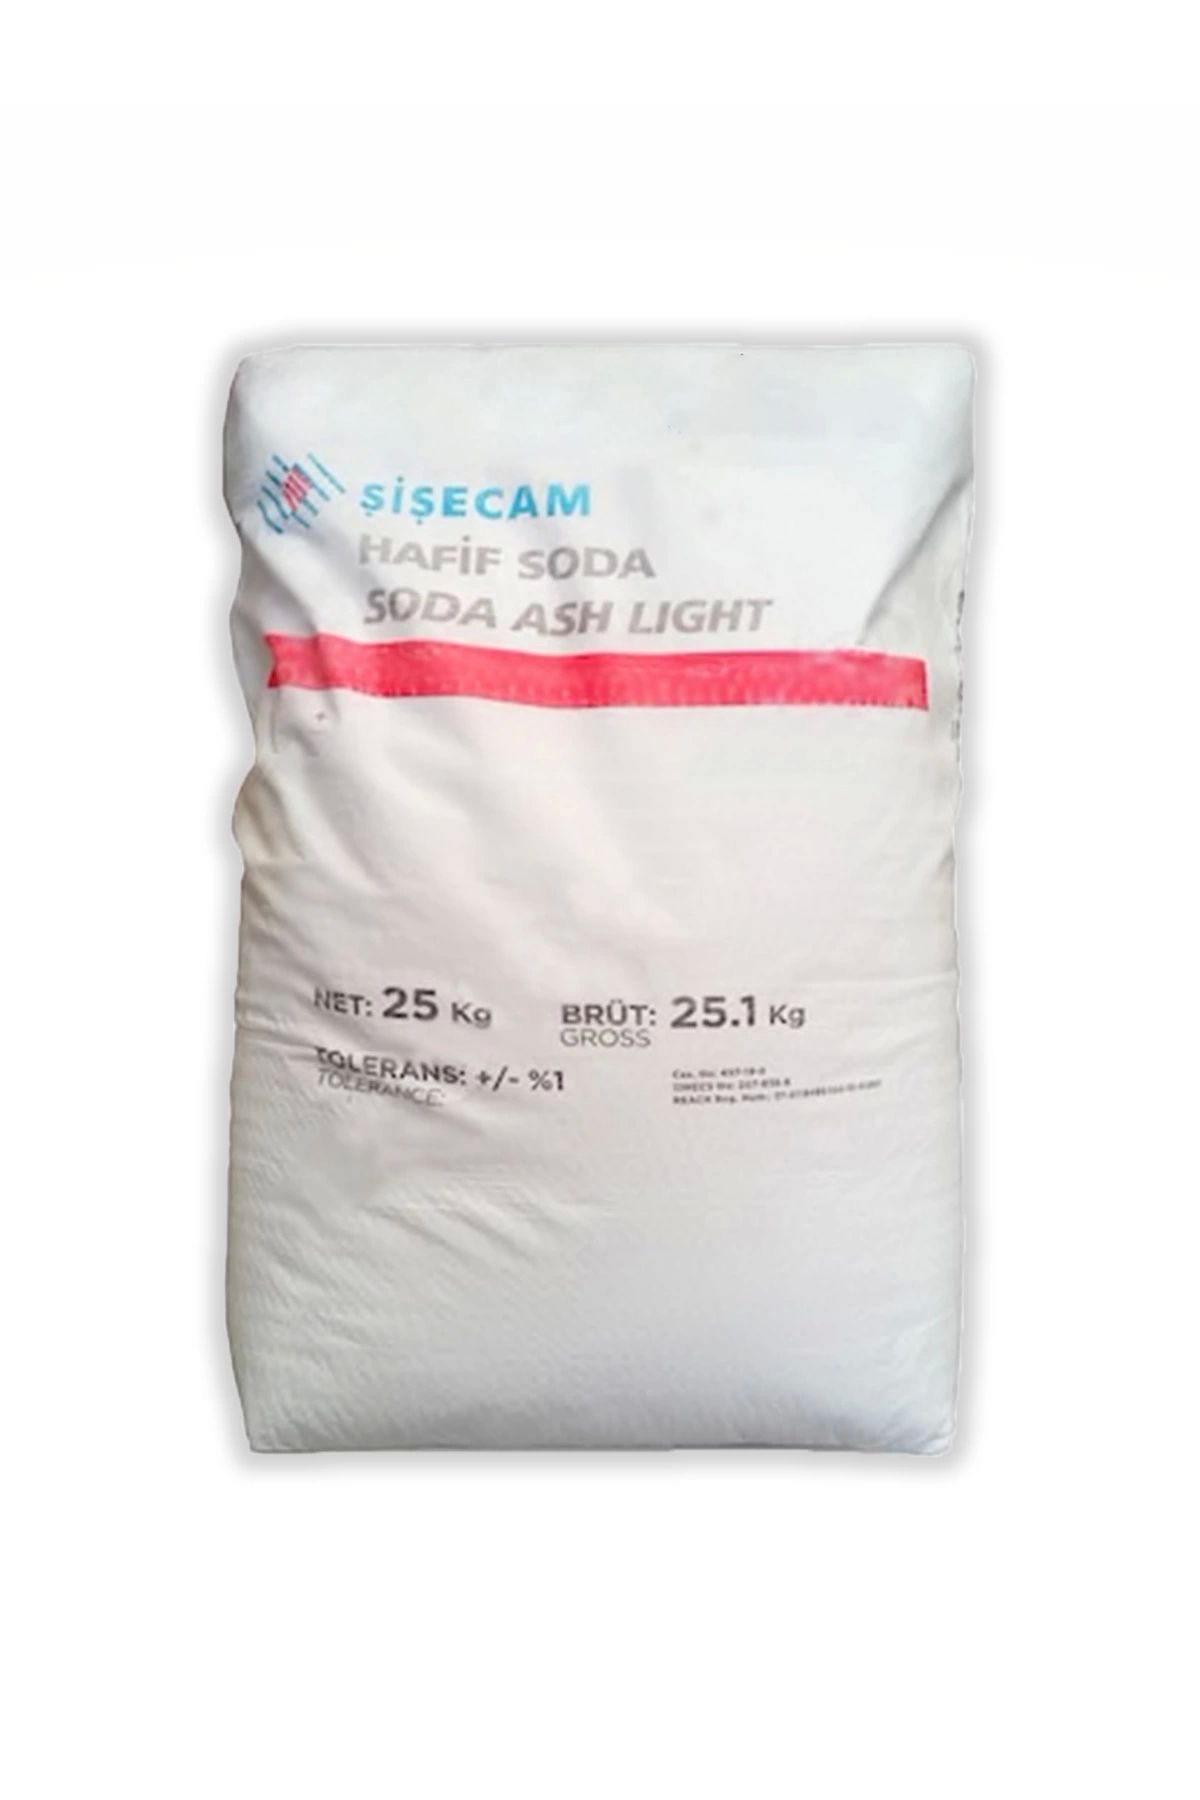 Şişecam Çamaşır Sodası Sodyum Karbonat ( Hafif Soda ) 10 Kg